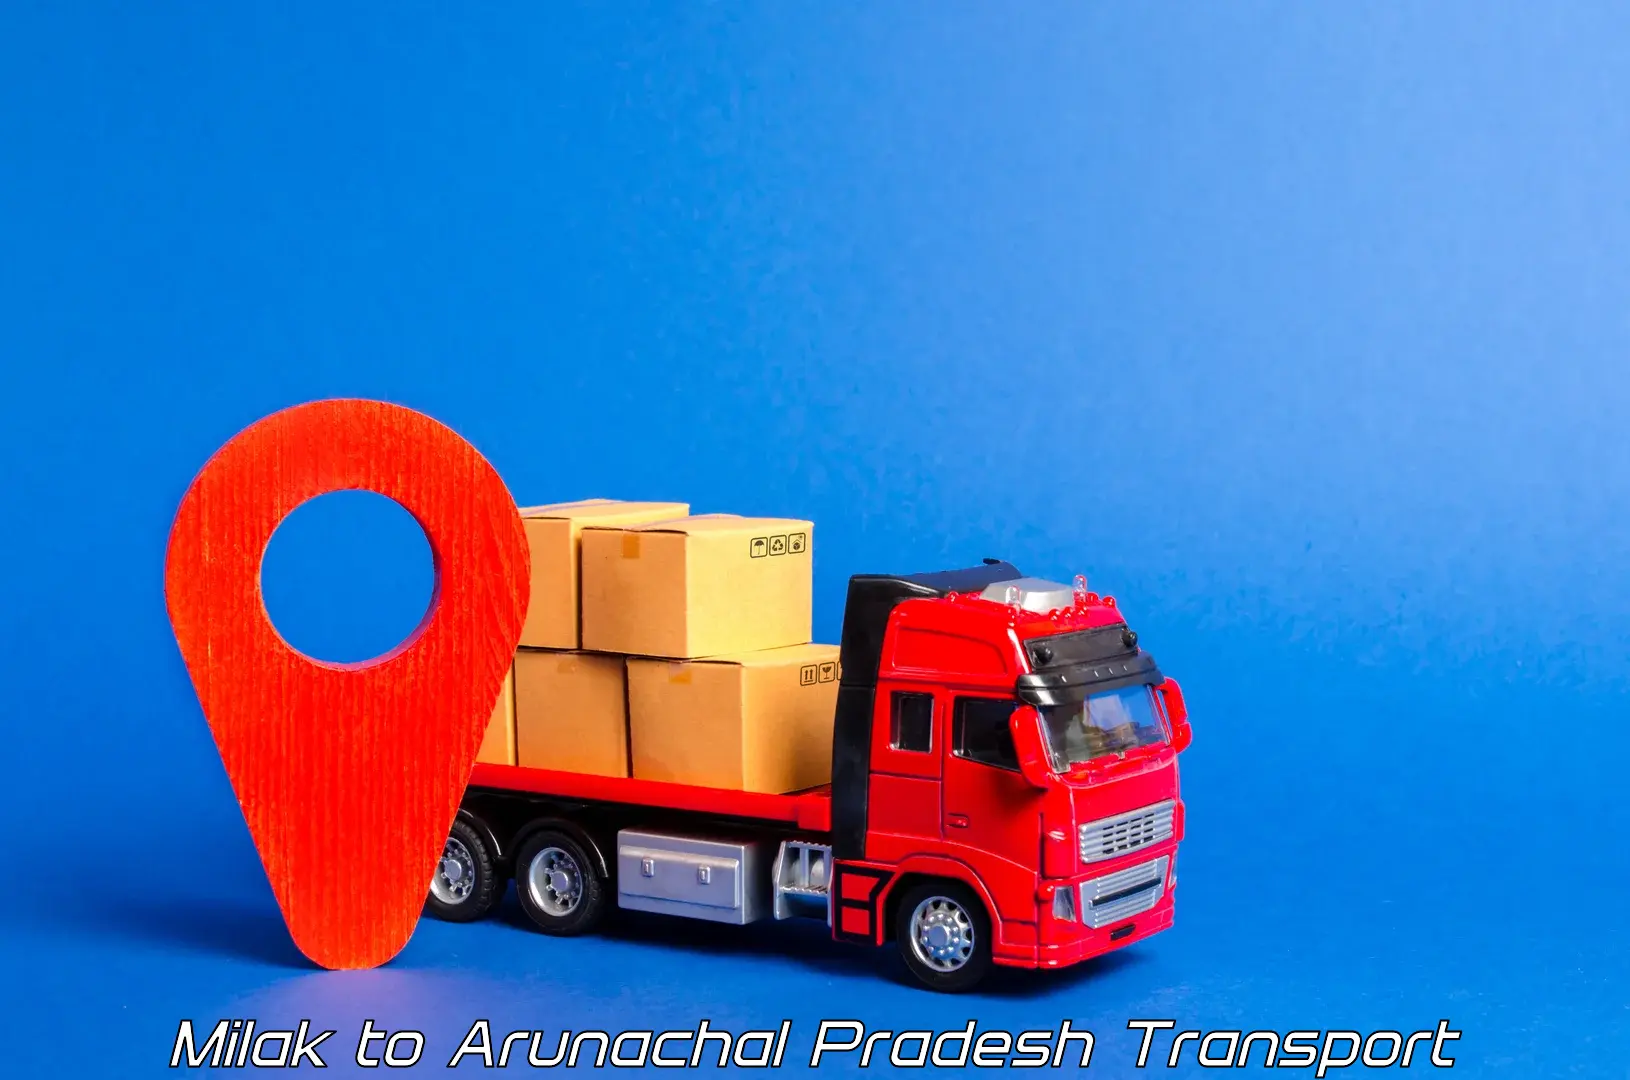 Cargo train transport services Milak to Arunachal Pradesh